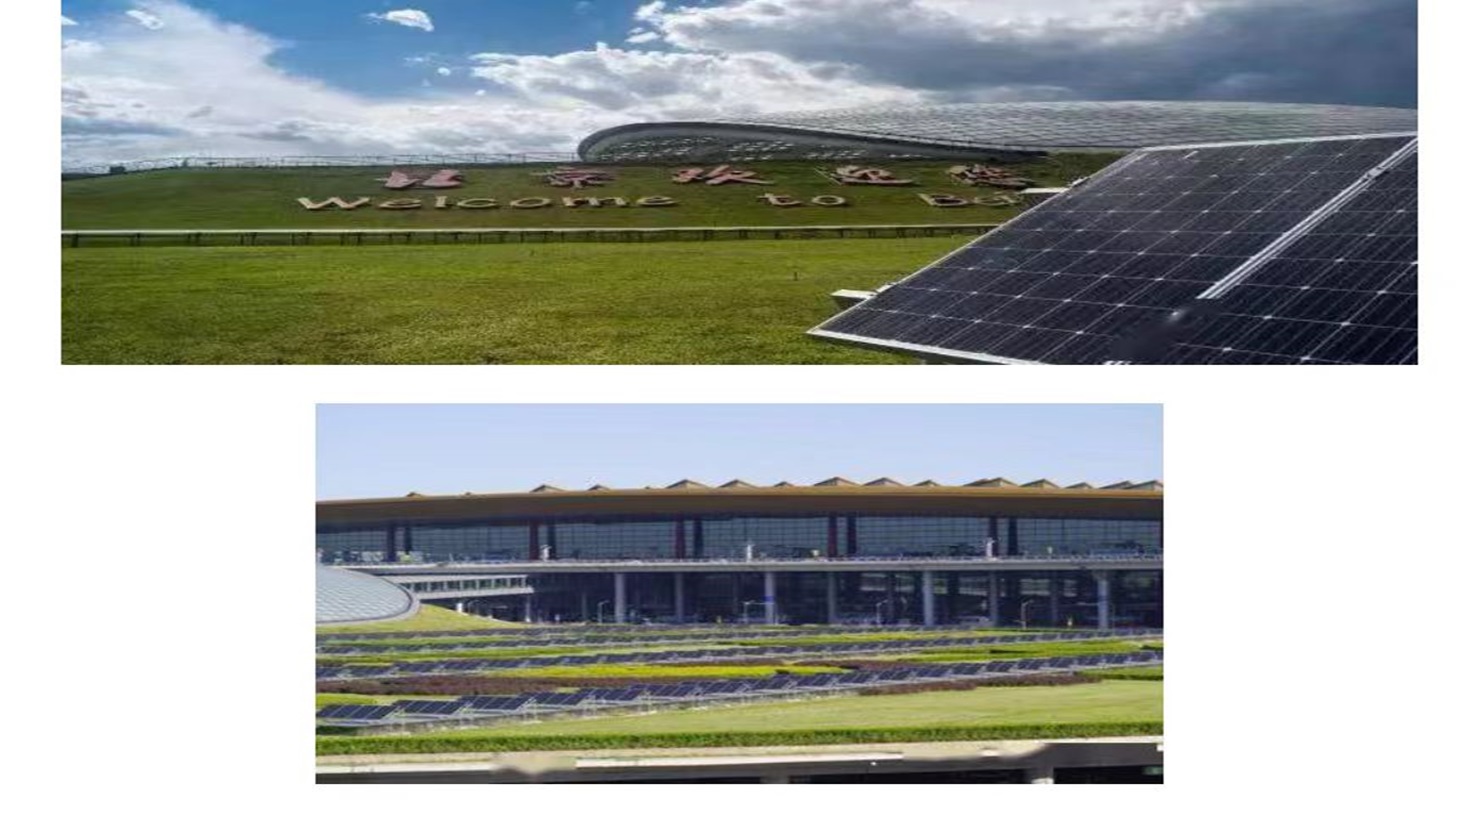 Le secteur de l'énergie solaire en plein essor : un aperçu de l'industrie photovoltaïque chinoise